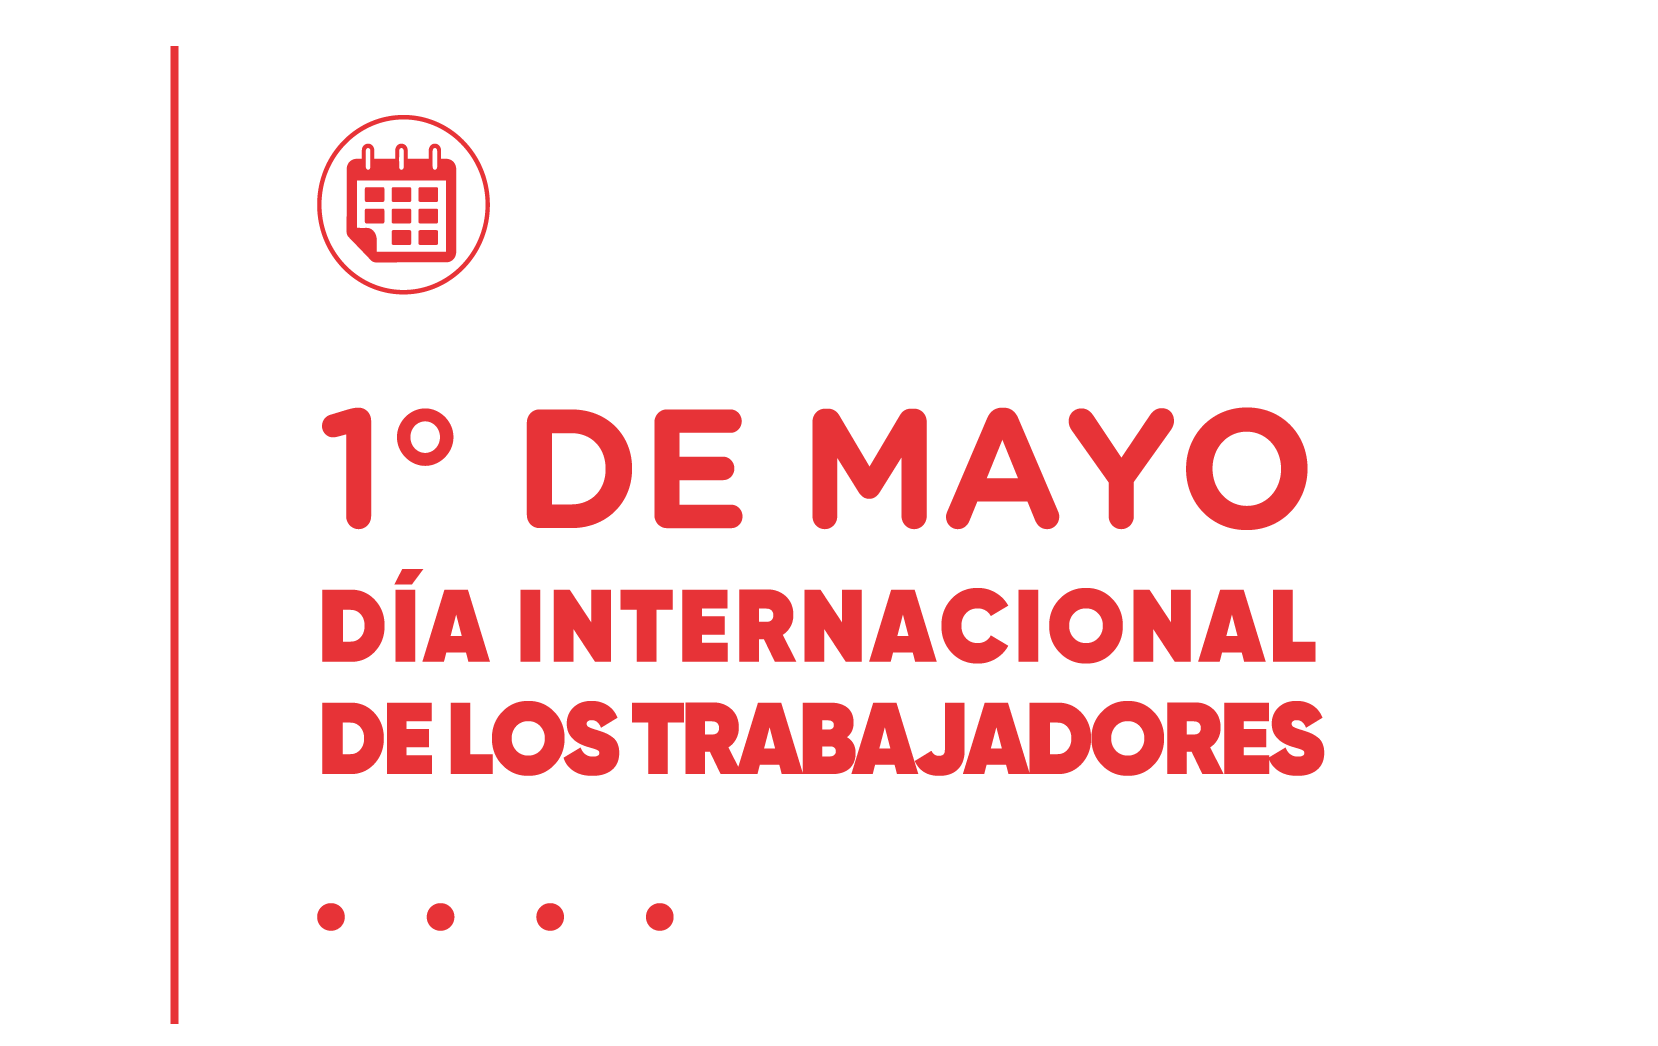 1 de mayo dia intrnacional de los trabajadores. cilsa ong por la inclusion y agencia VML